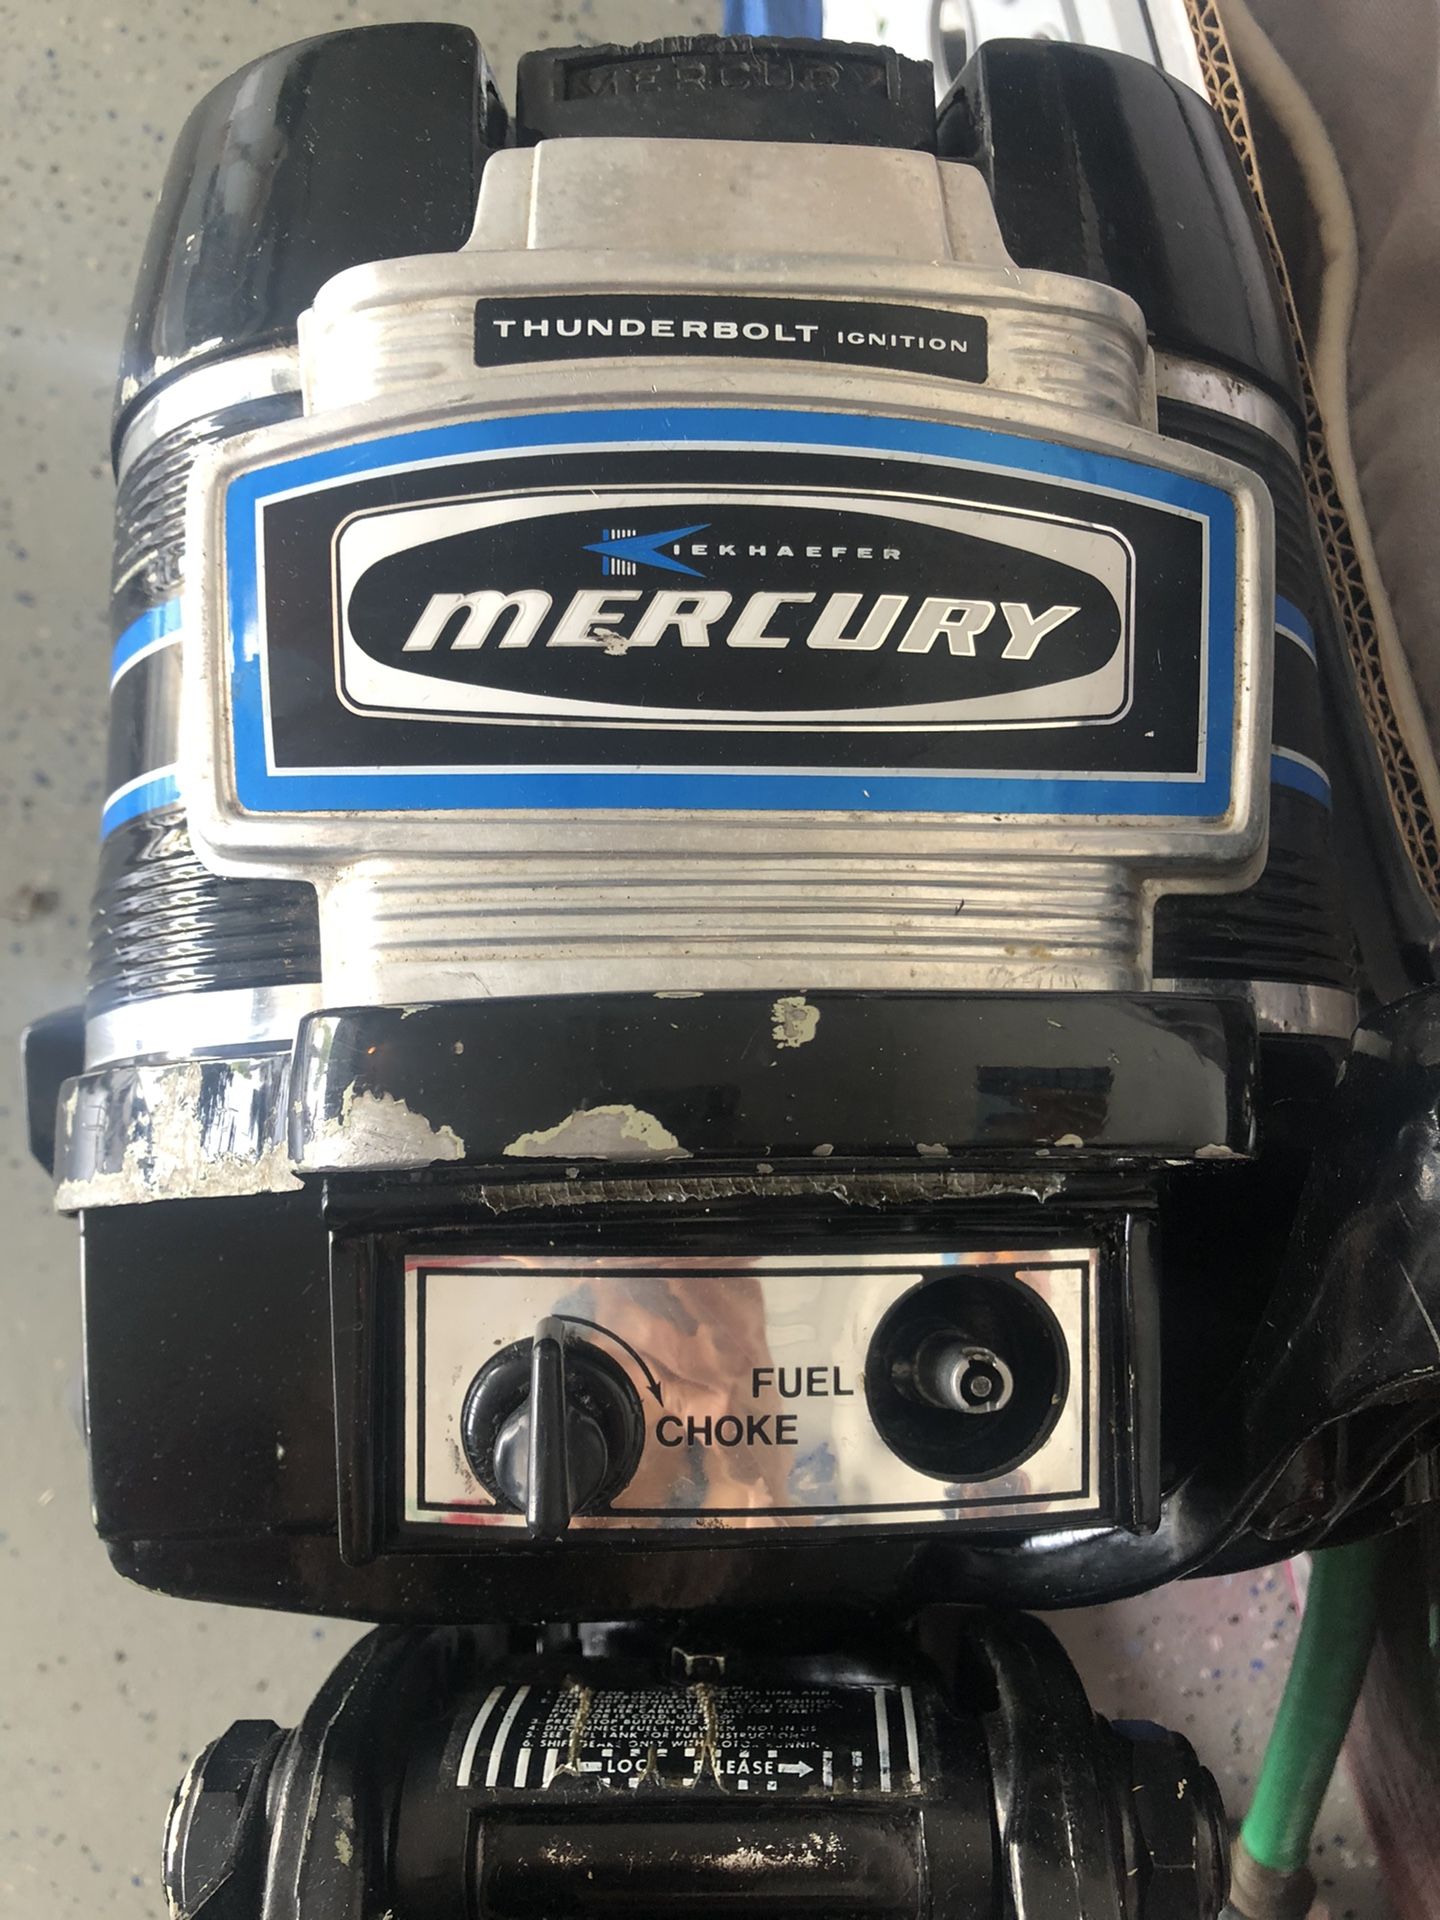 Mercury 7.5 hp outboard motor